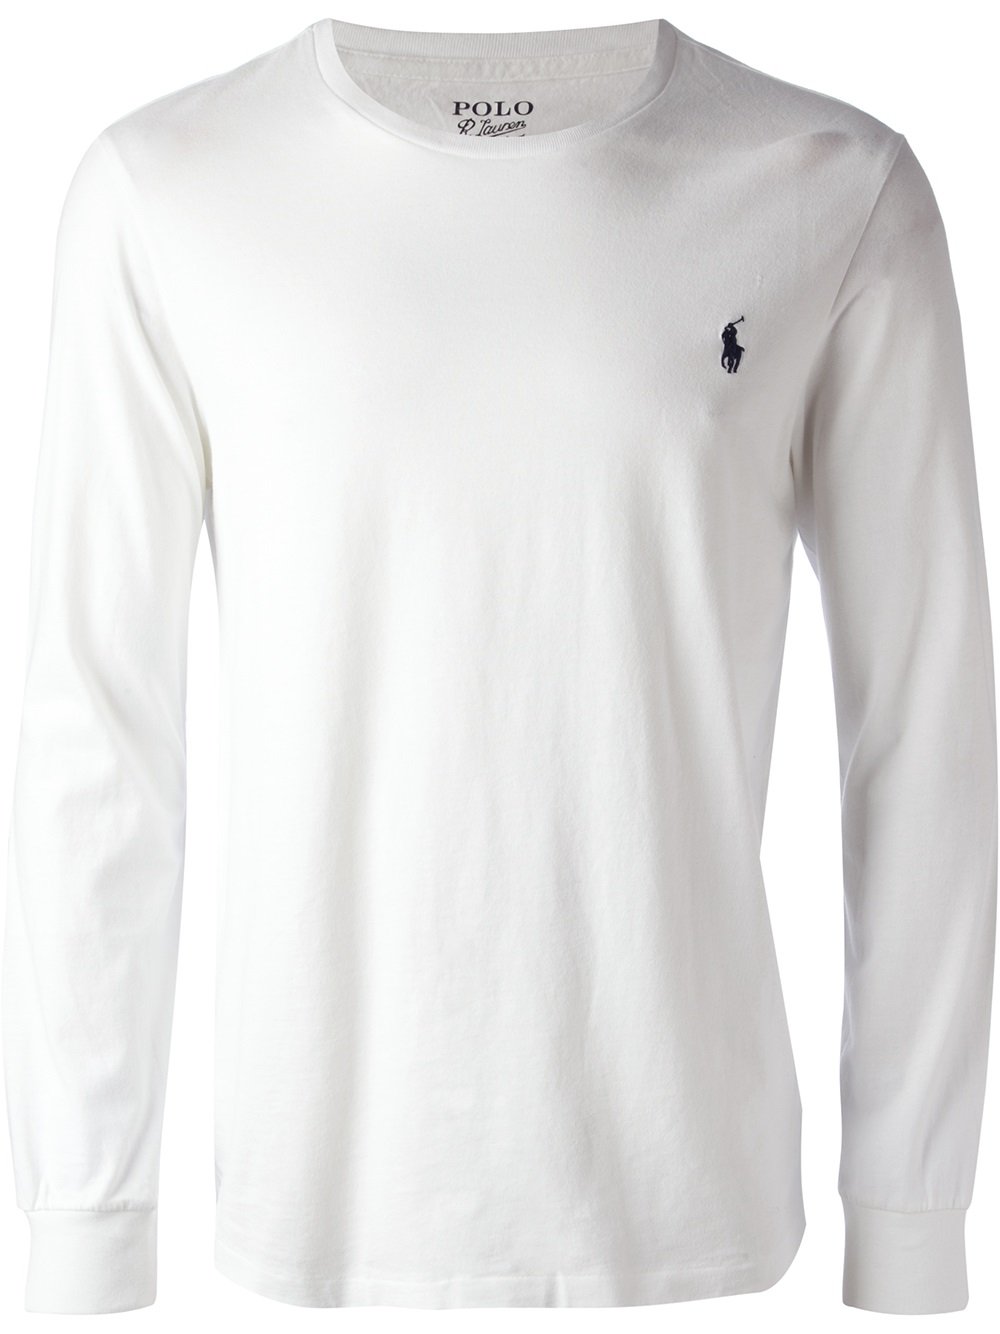 Polo Ralph Lauren Long Sleeve Tshirt in White for Men - Lyst